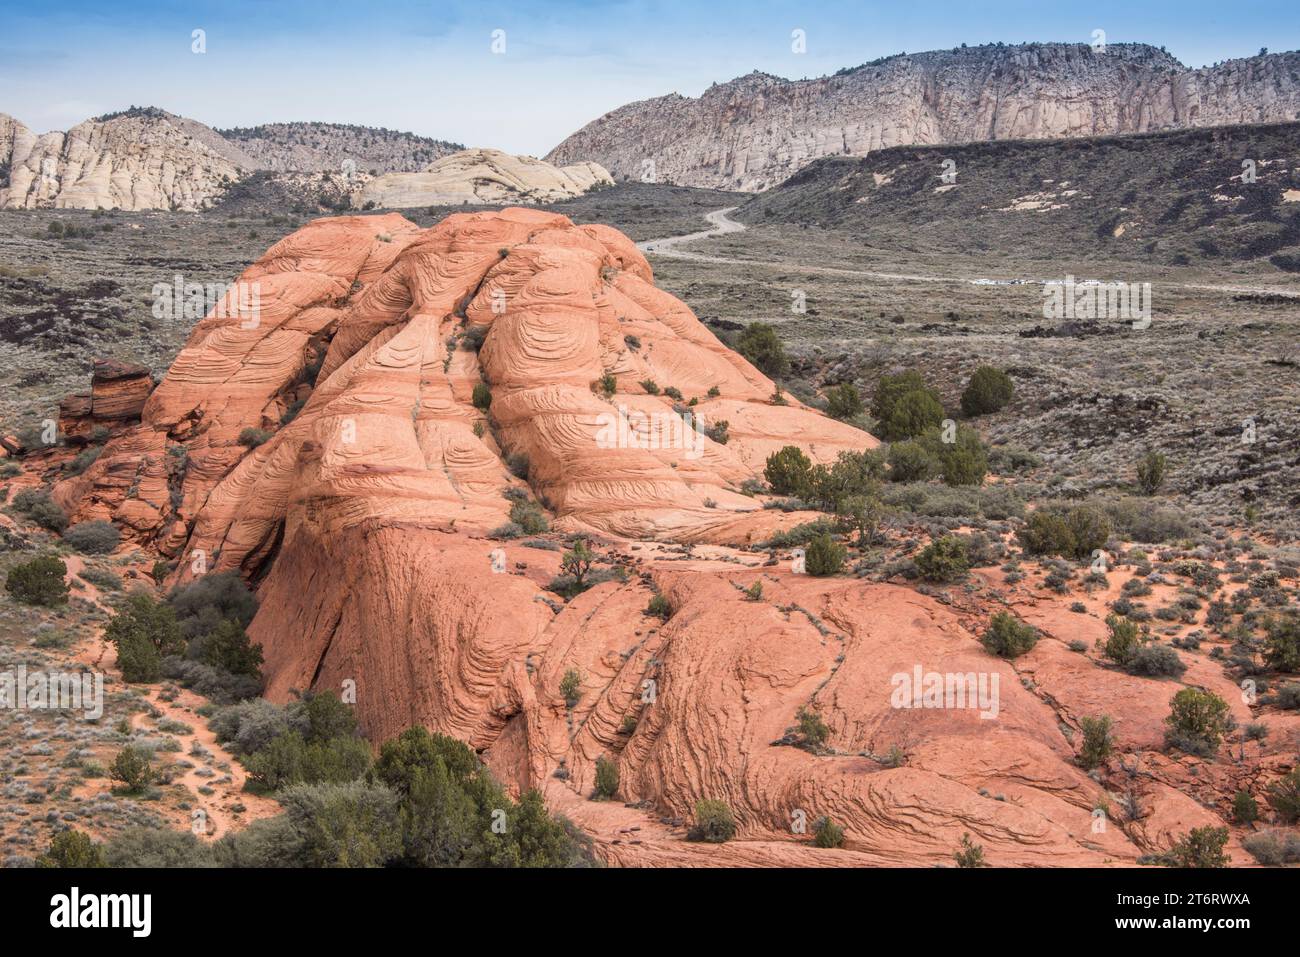 Dune di sabbia pietrificate formavano l'arenaria navajo in questo paesaggio panoramico di Red Cliffs Desert Reserve nel parco statale del canyon di neve, st george, utah, usa Foto Stock